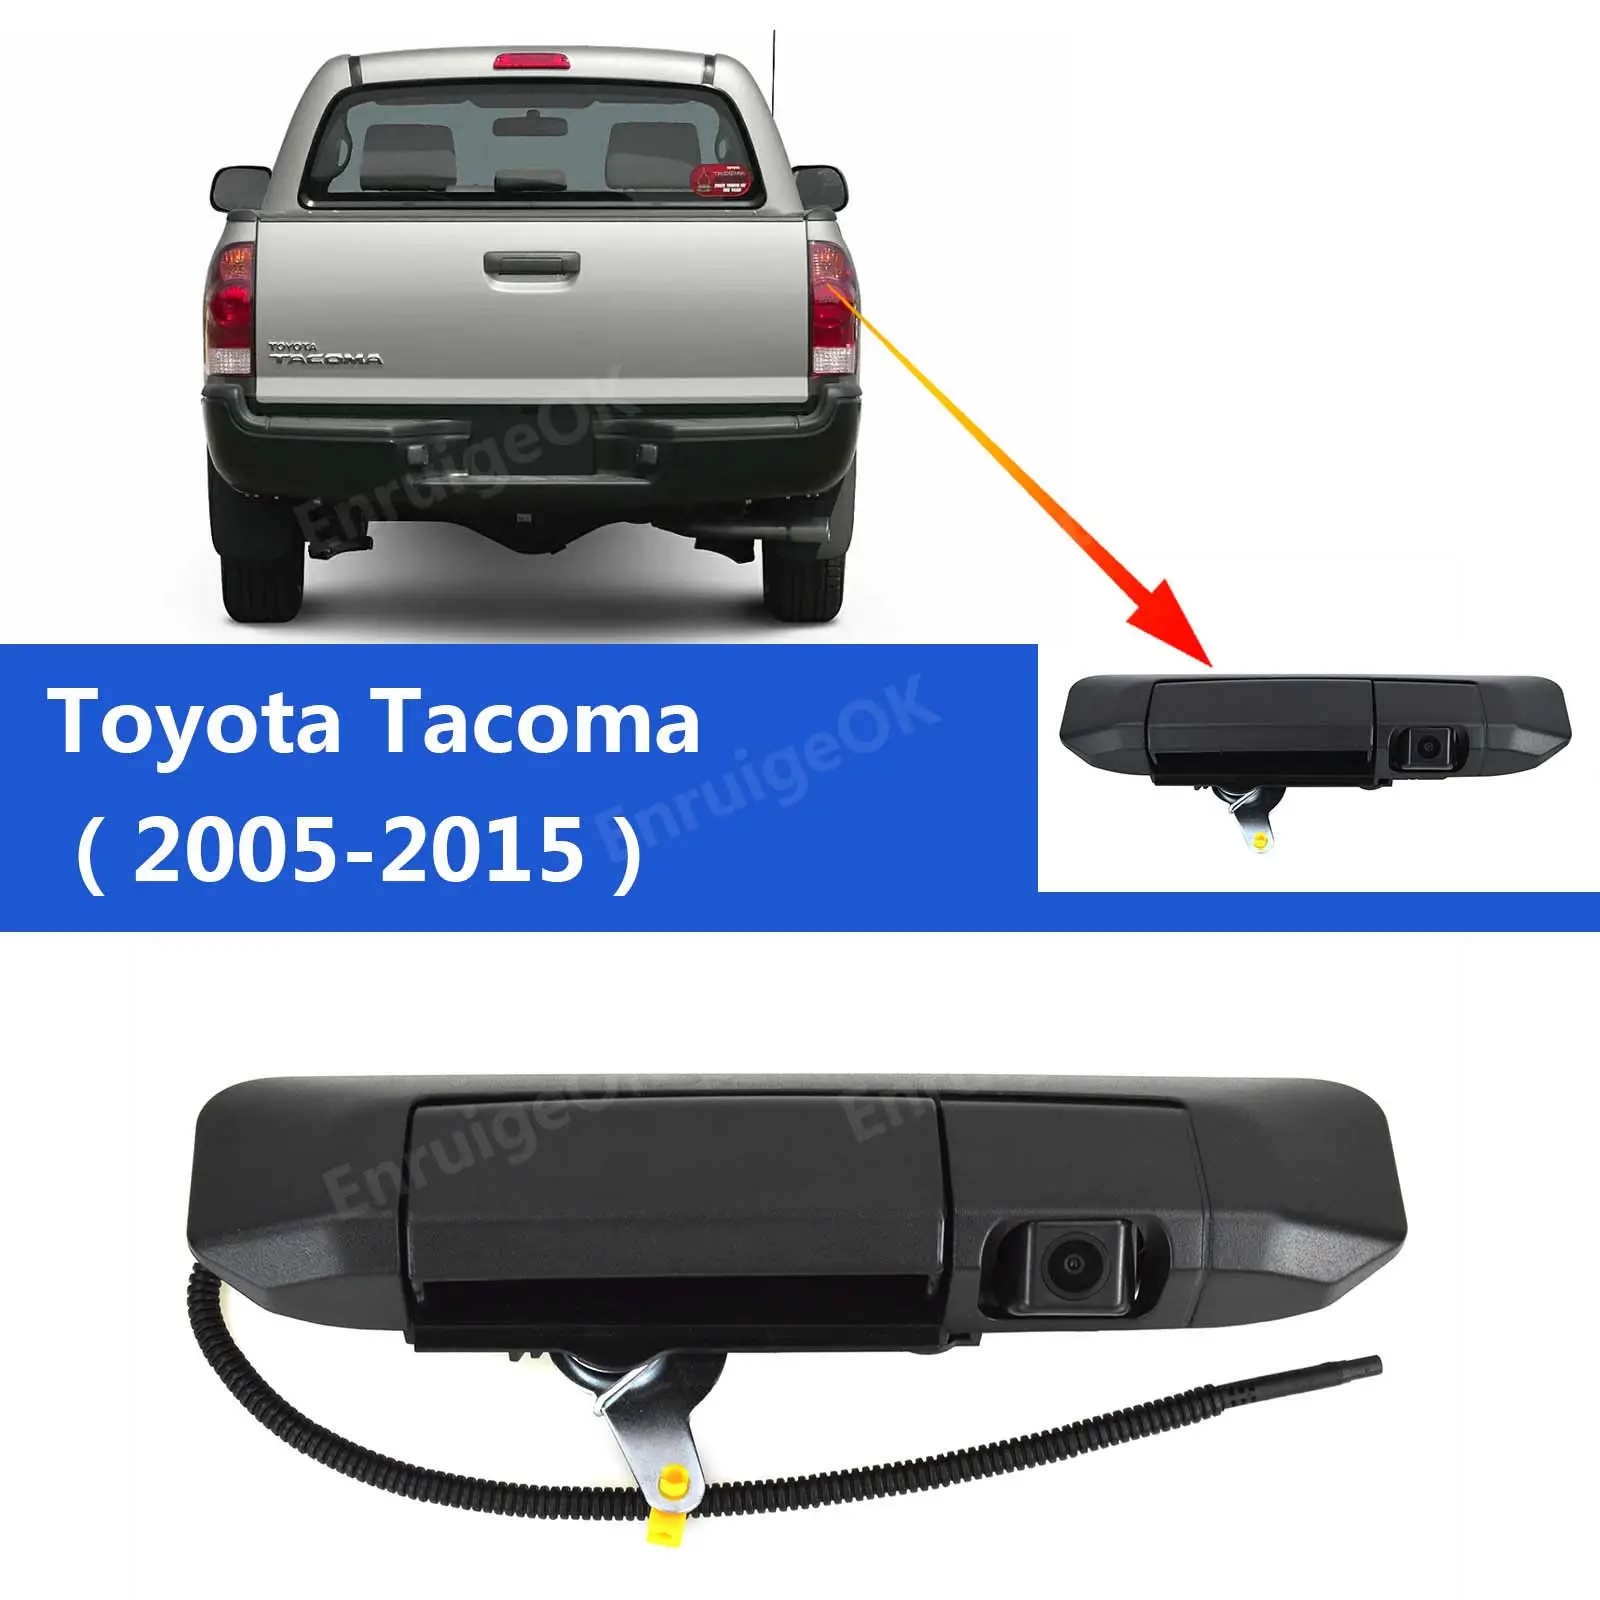 टोयोटा टैकोमा 2005-2015 के लिए फैक्टरी बिक्री पिकअप ट्रक टेलगेट हैंडल रियर व्यू रिवर्स बैकअप कैमरा